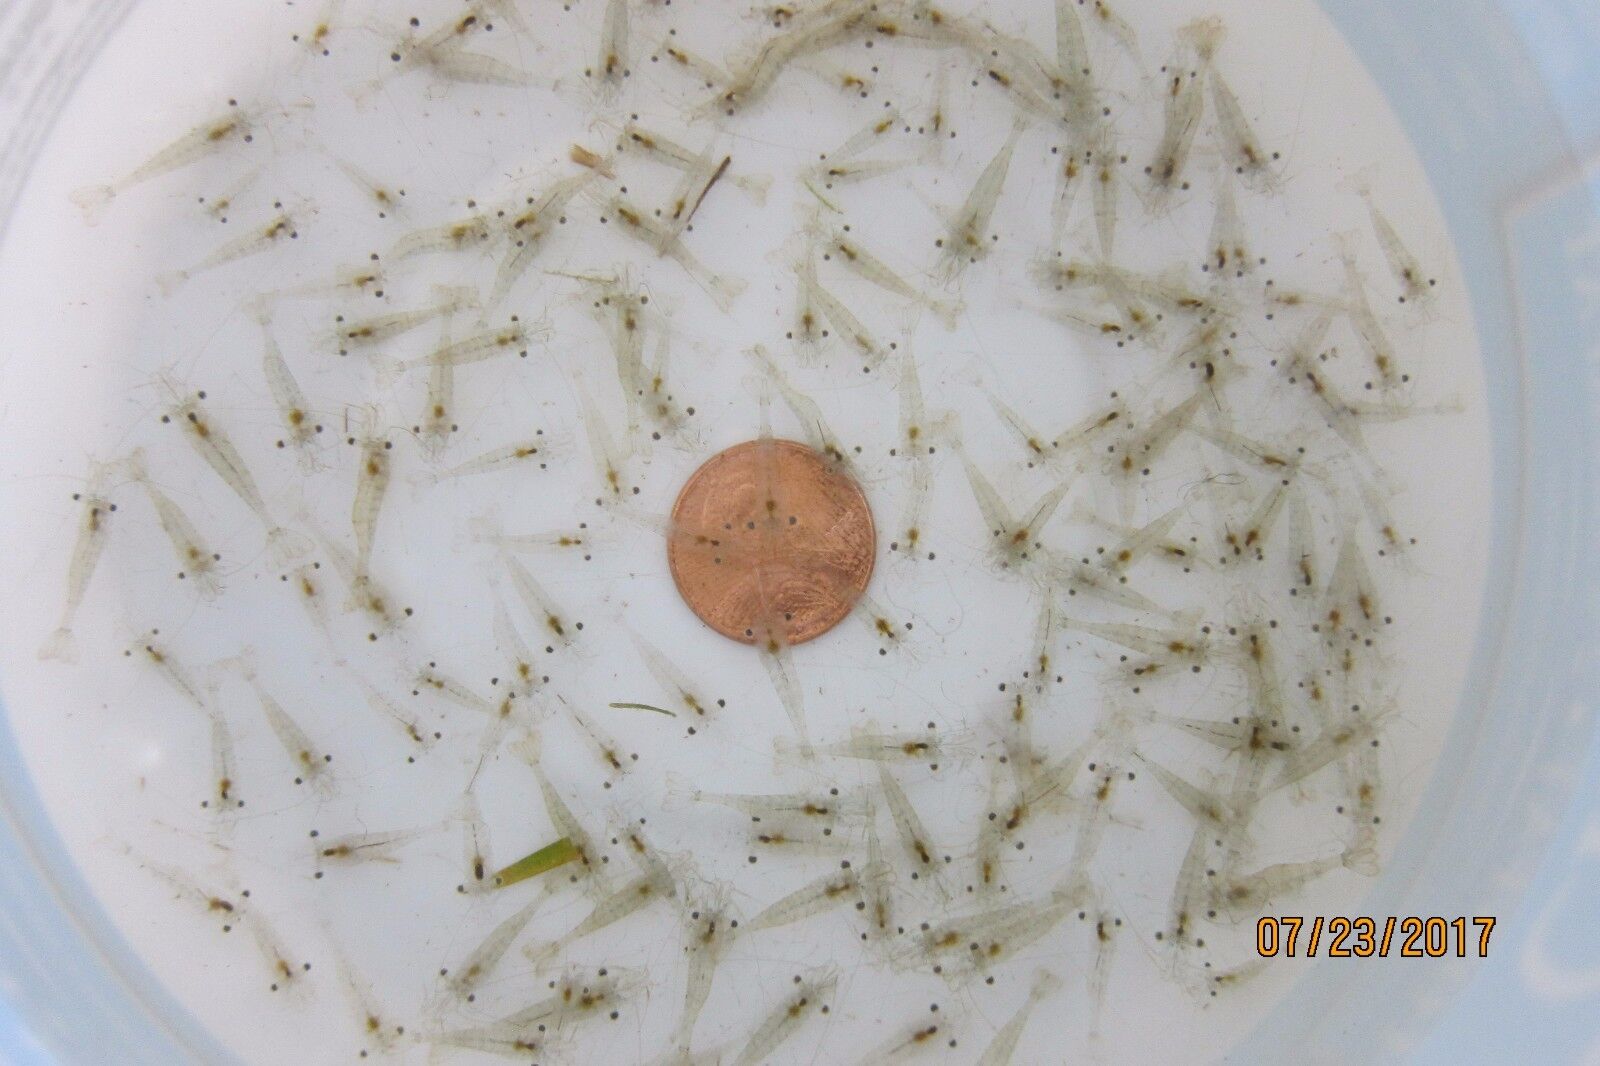 50+ Live Freshwater Feeder Ghost Shrimp; 